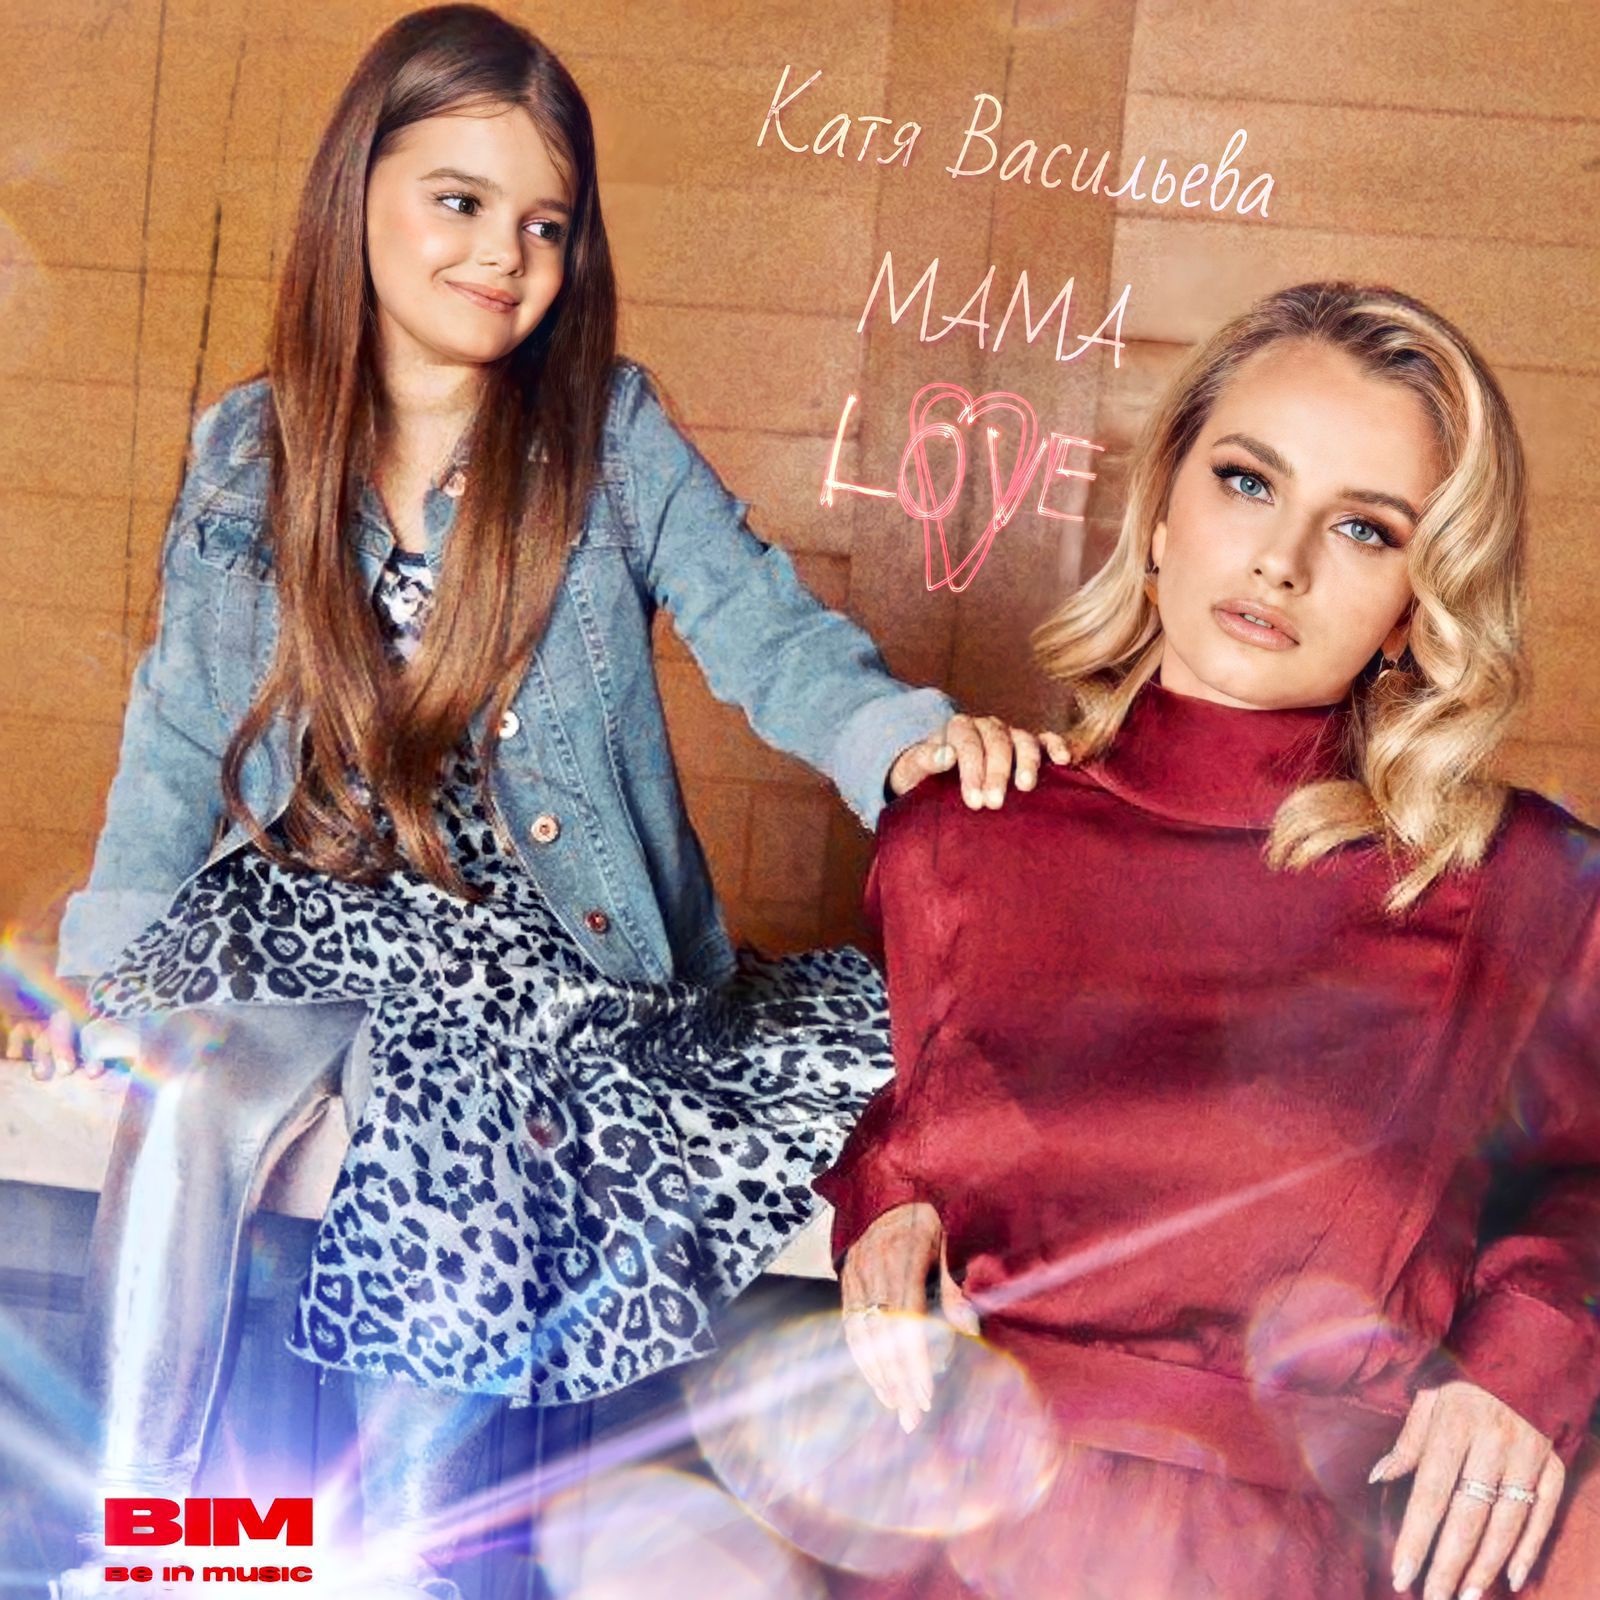 Юная певица Катя Васильева выпустила новый сингл "Мама"